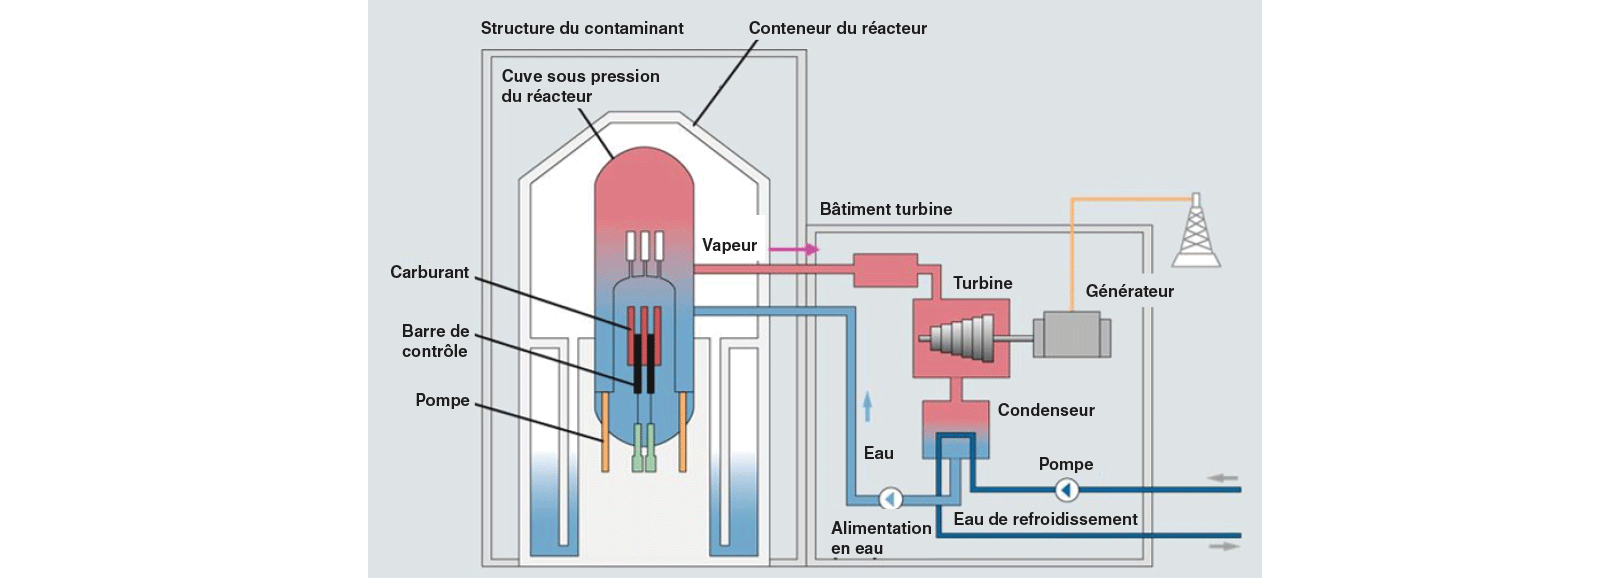 Les centrales nucléaires : réacteur à eau bouillante (REB)